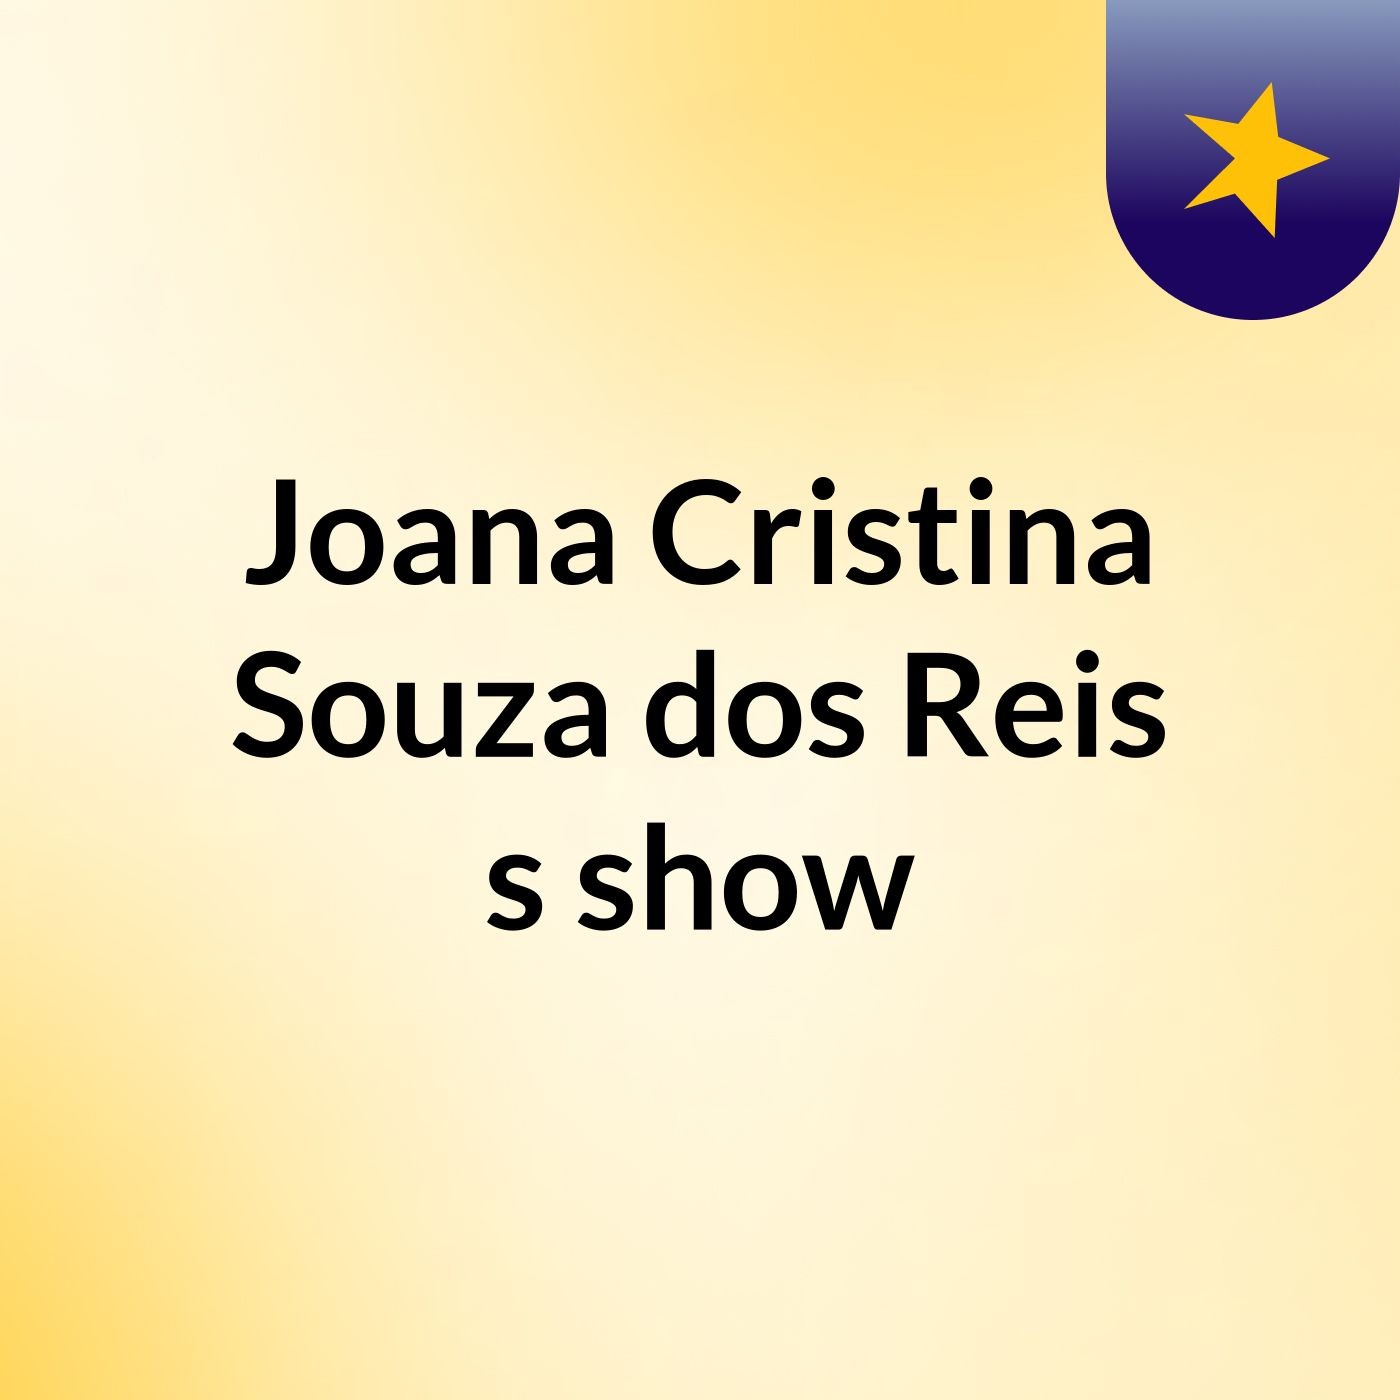 Joana Cristina Souza dos Reis's show